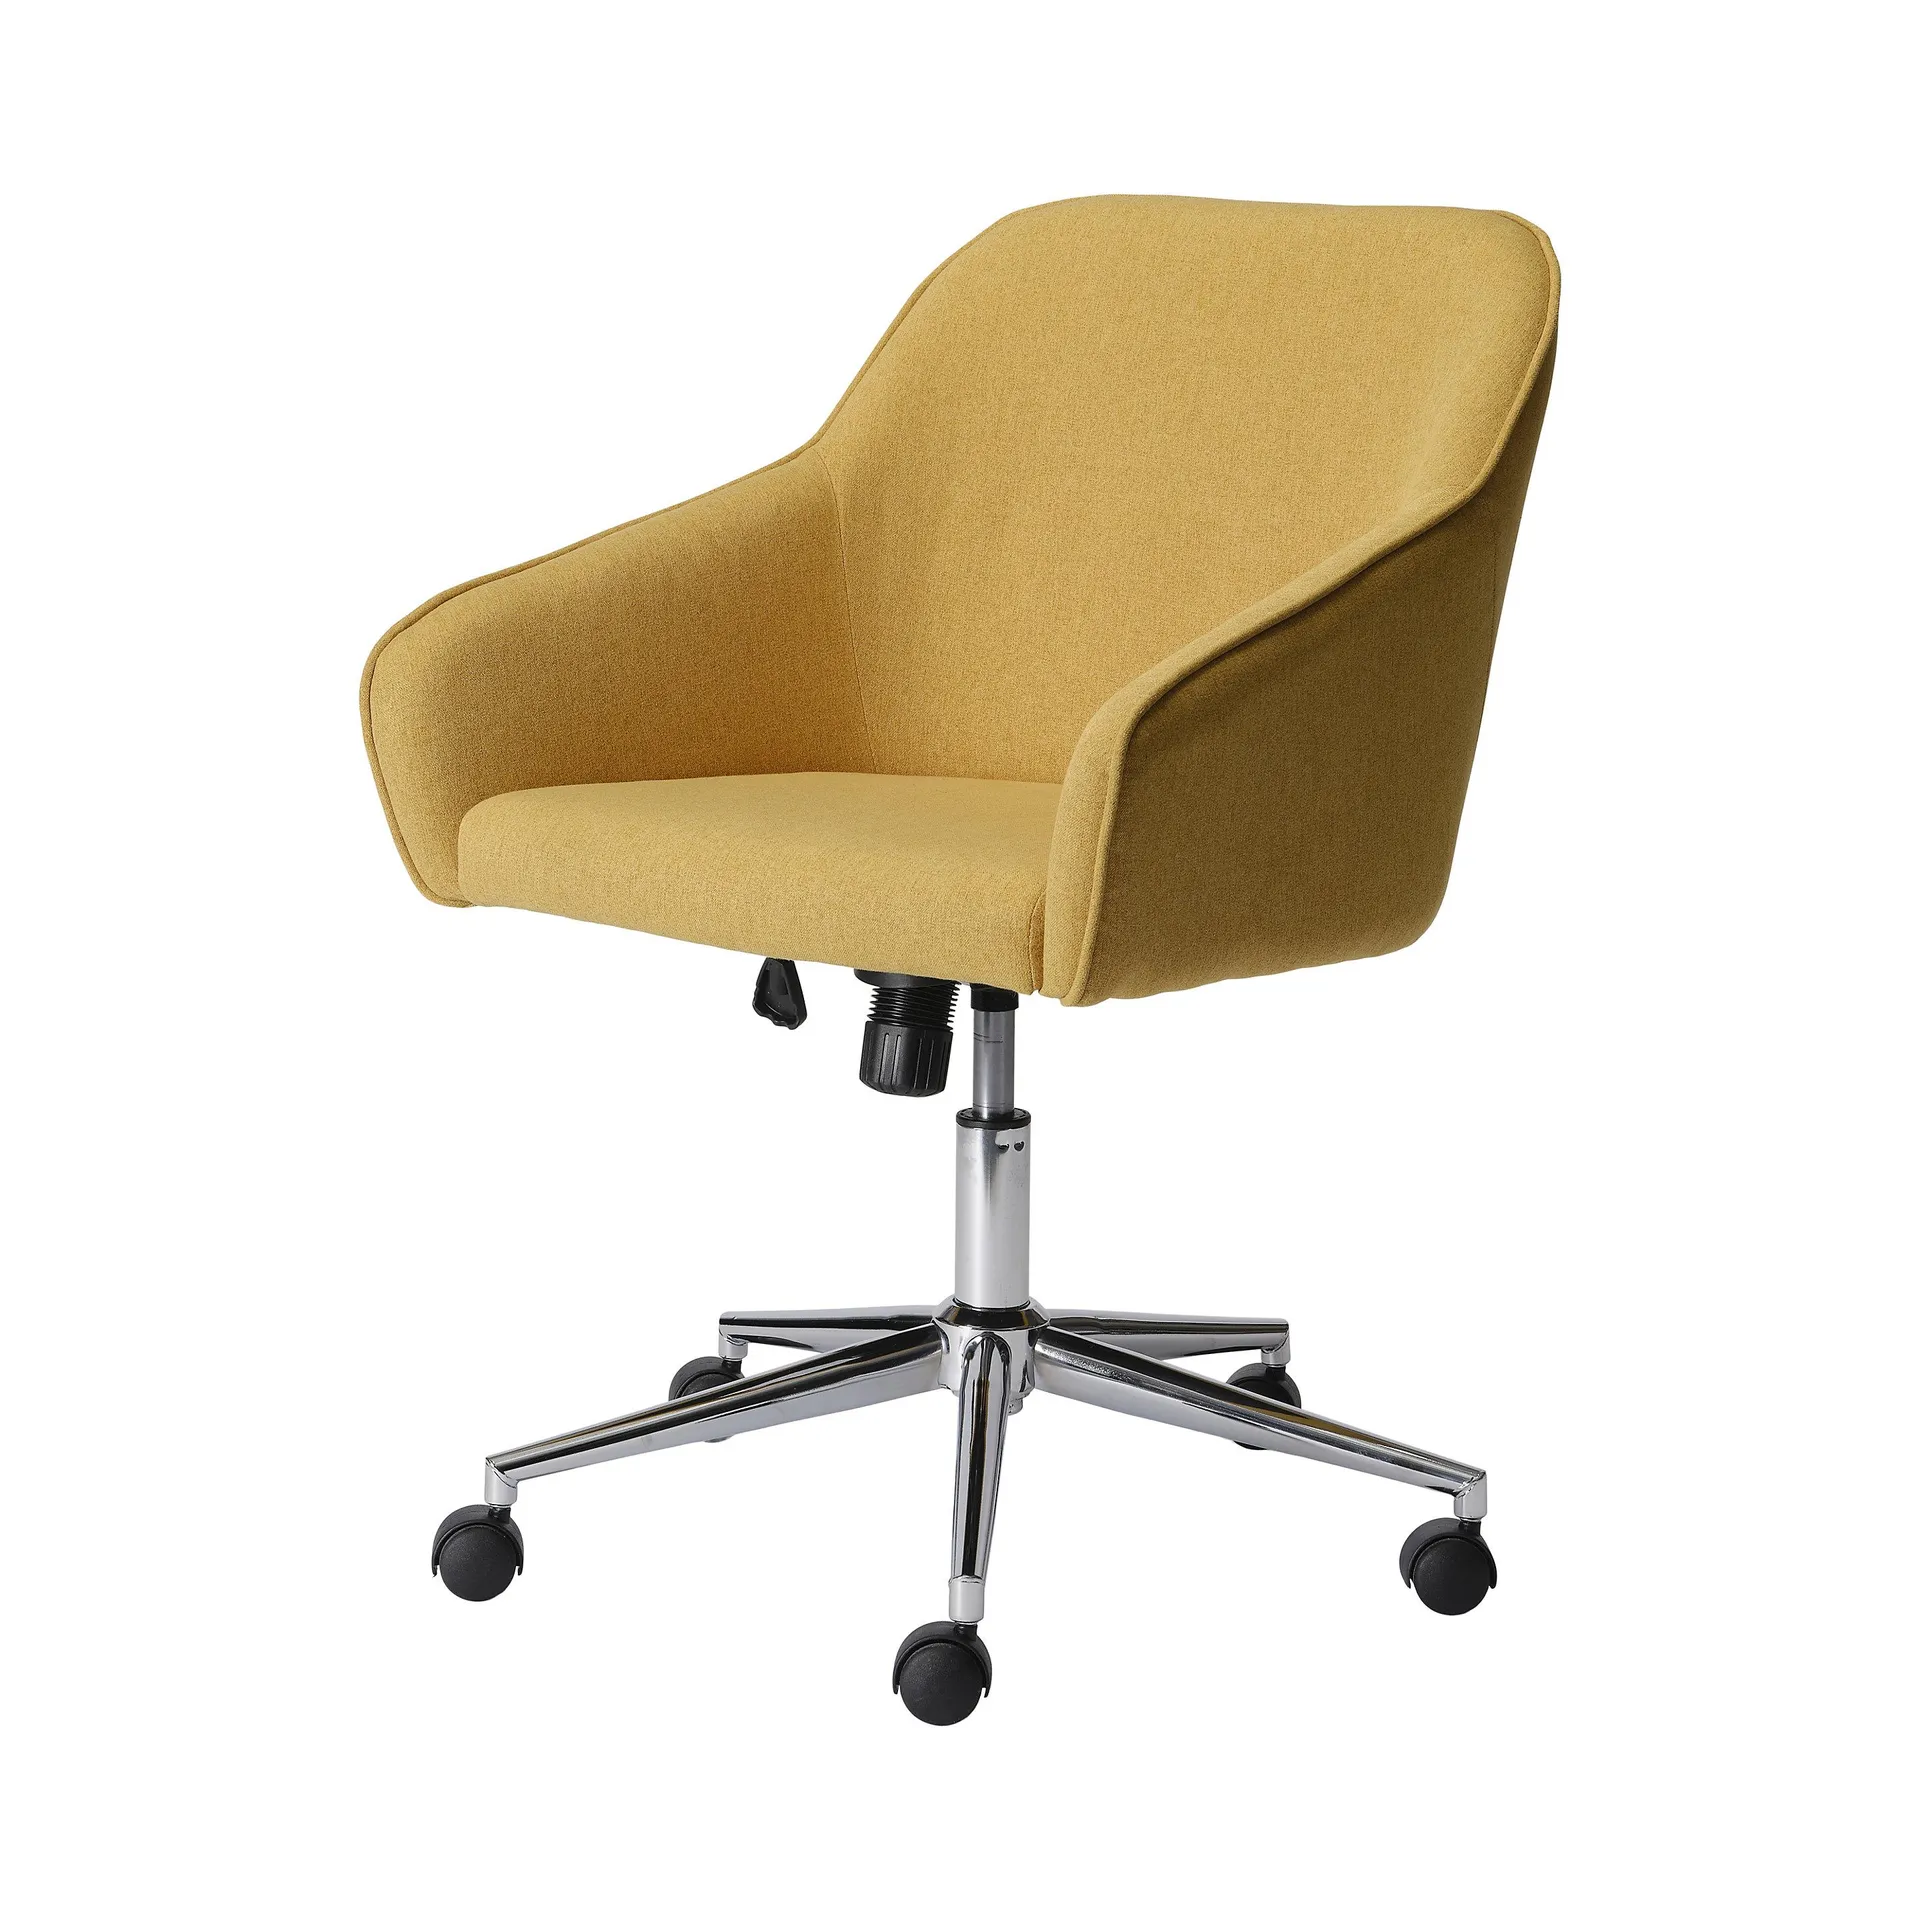 Arvor Yellow Linen effect Office chair (H)945mm (W)620mm (D)640mm